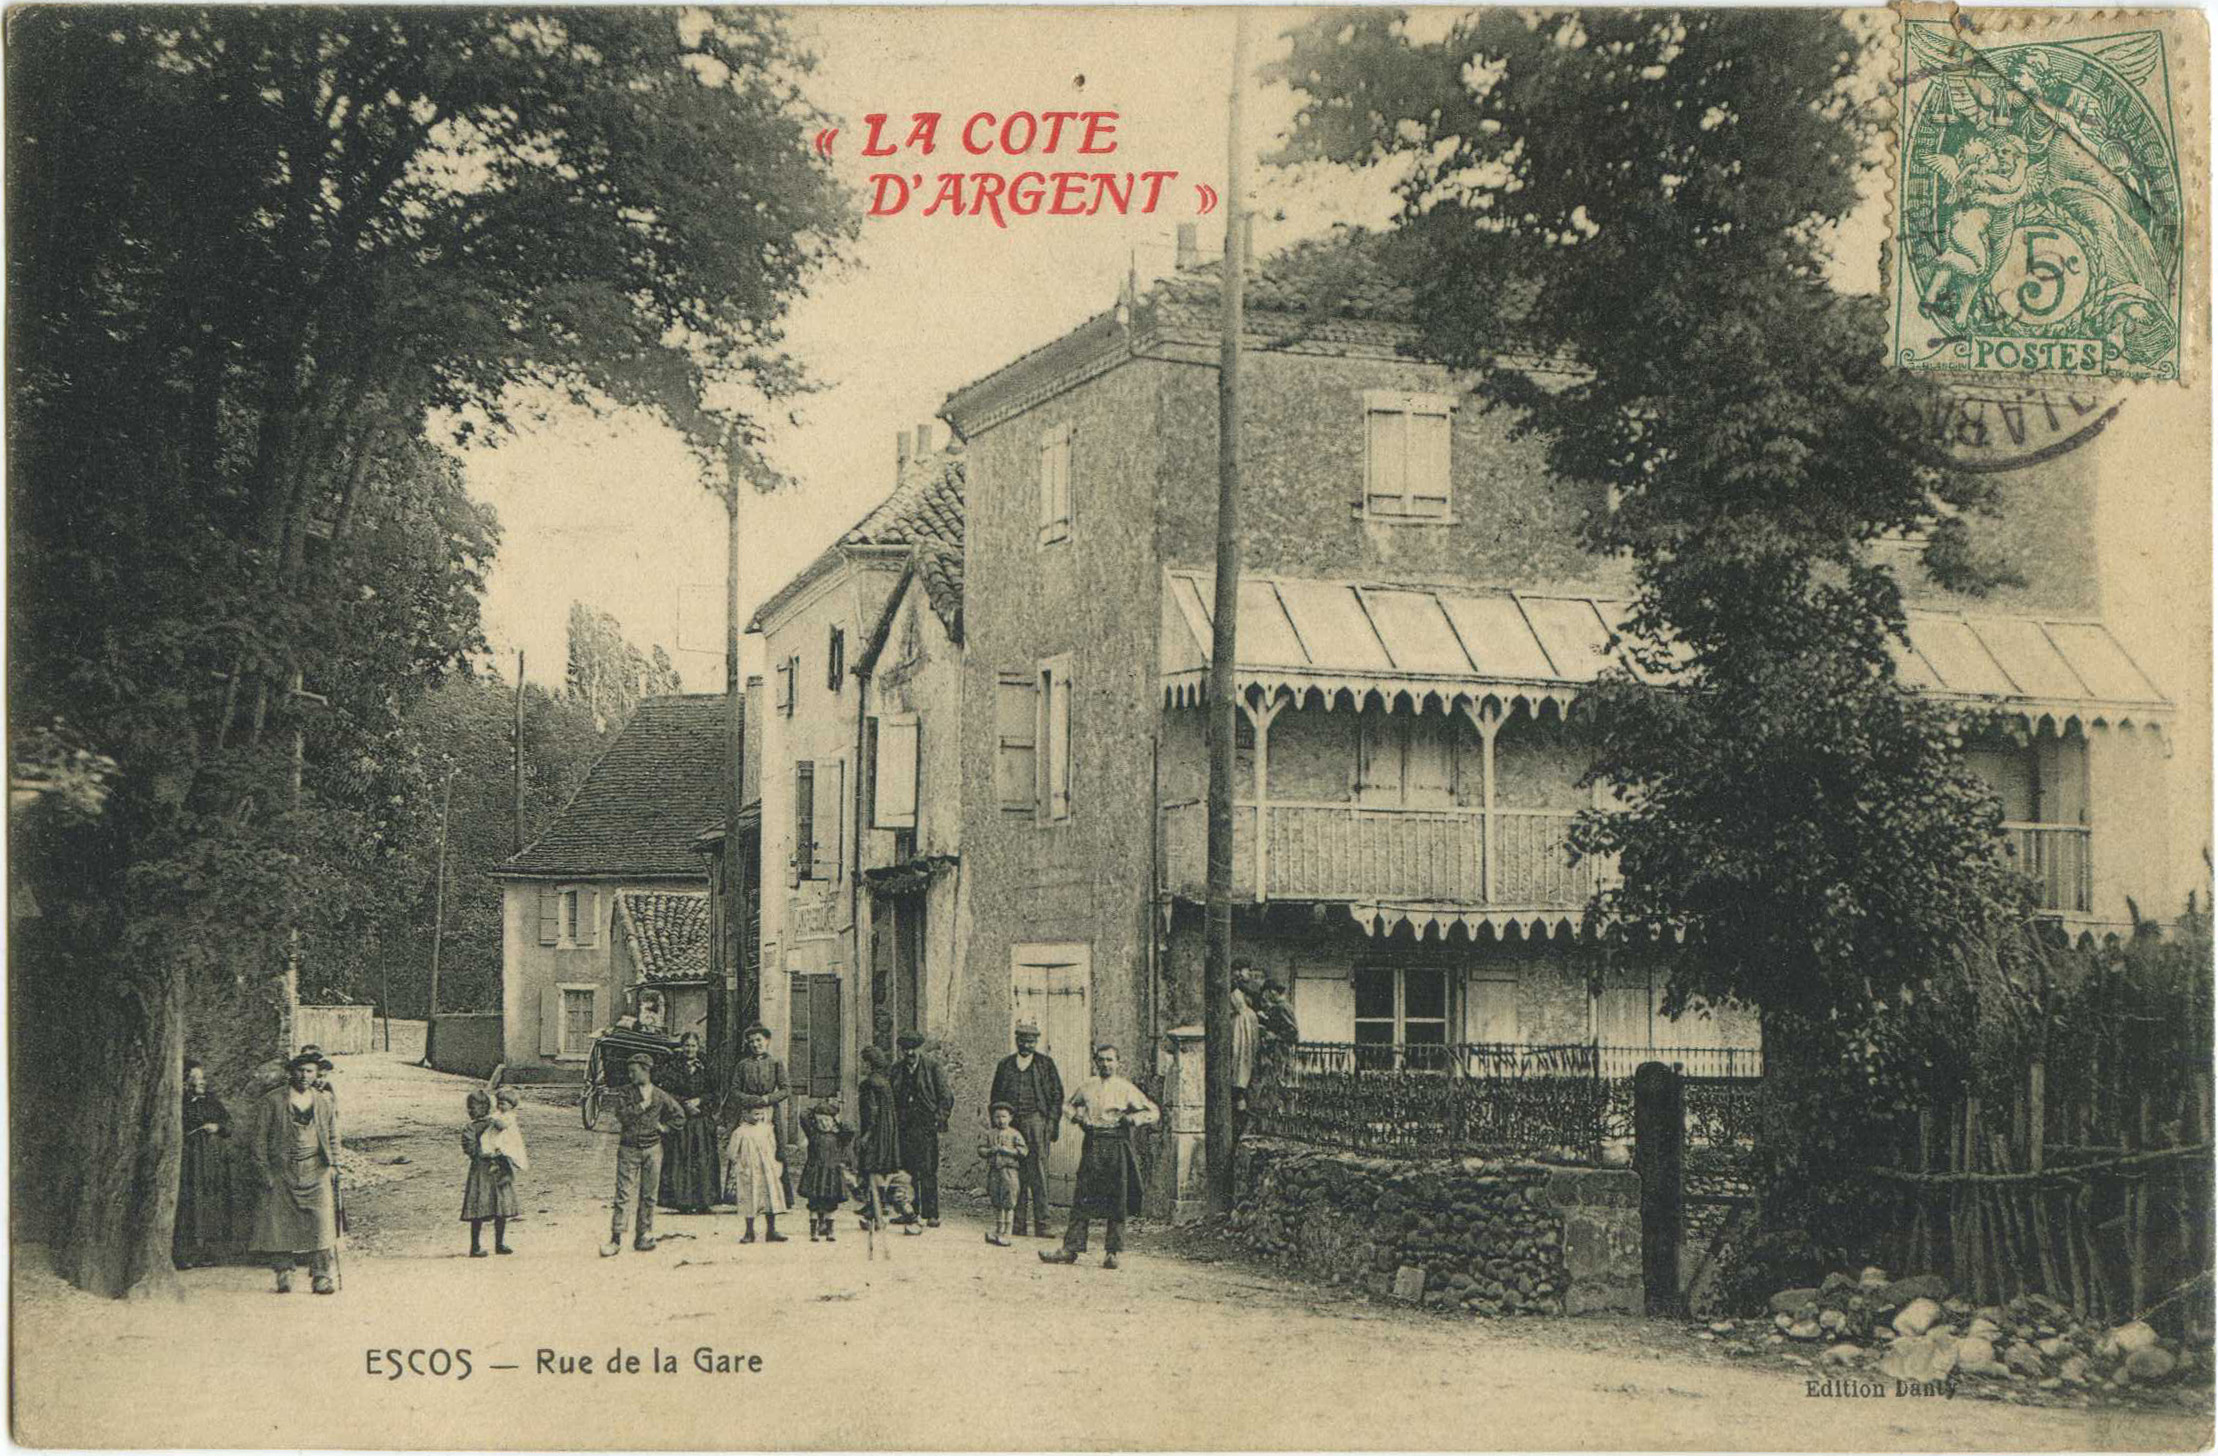 Escos - Rue de la Gare